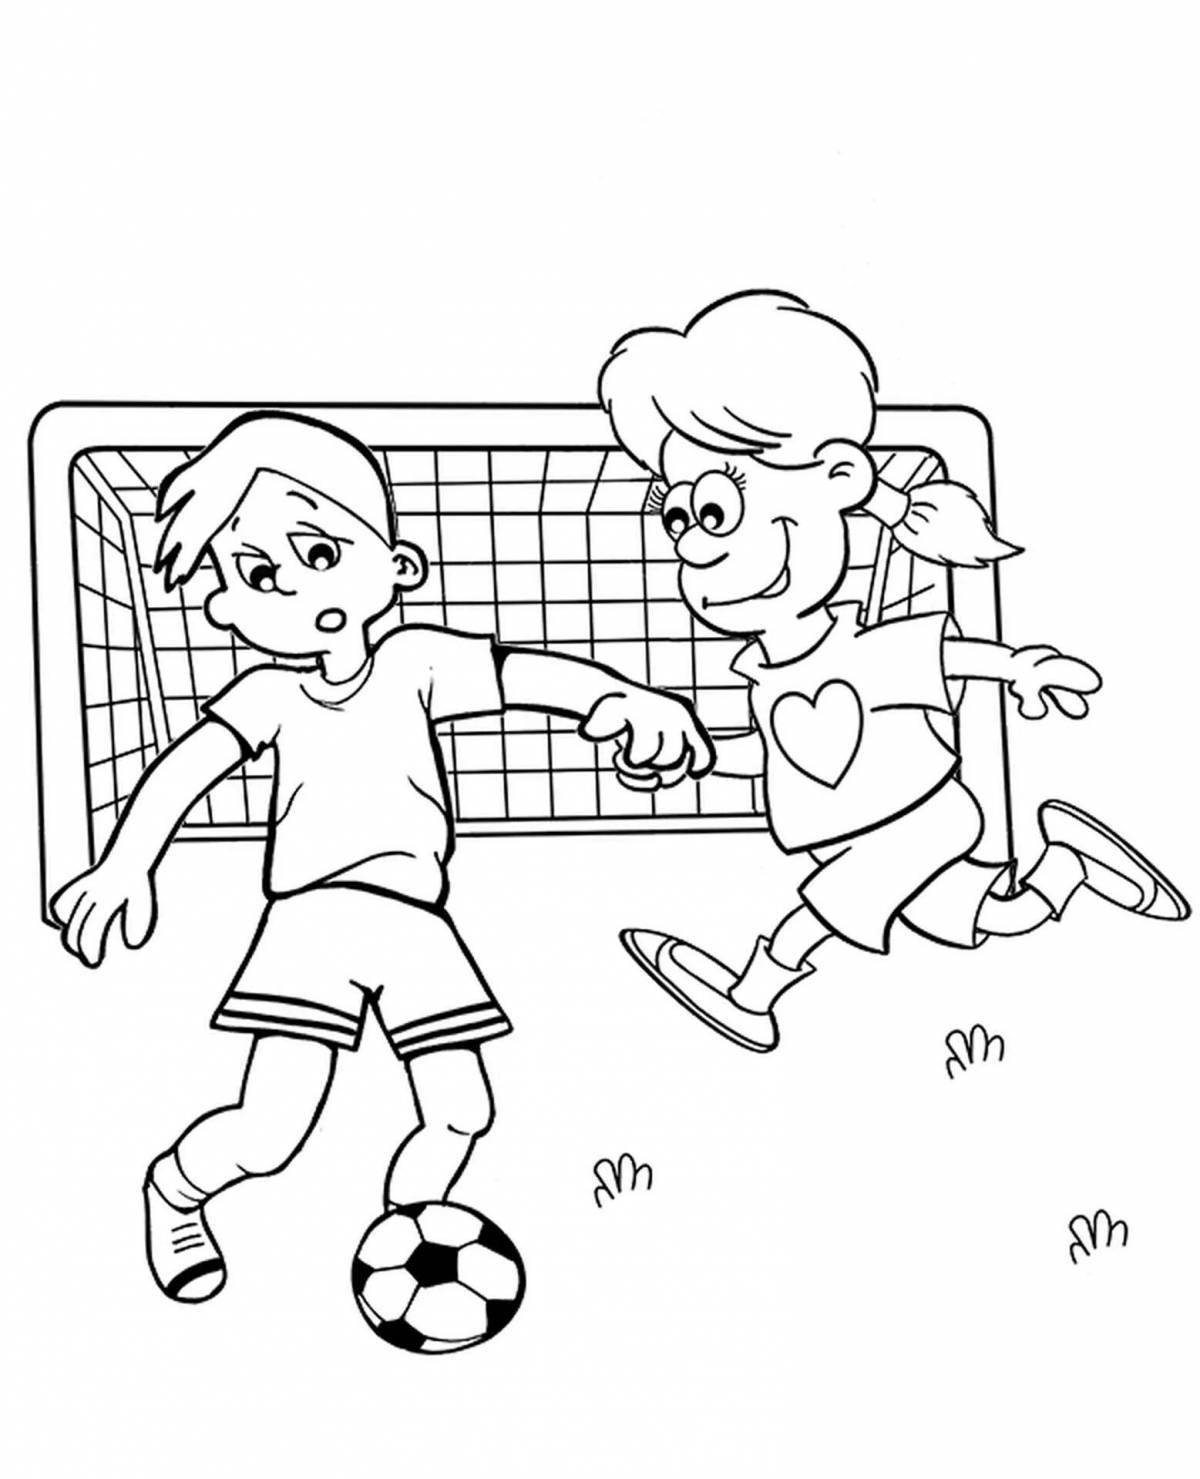 Радостная футбольная раскраска для детей